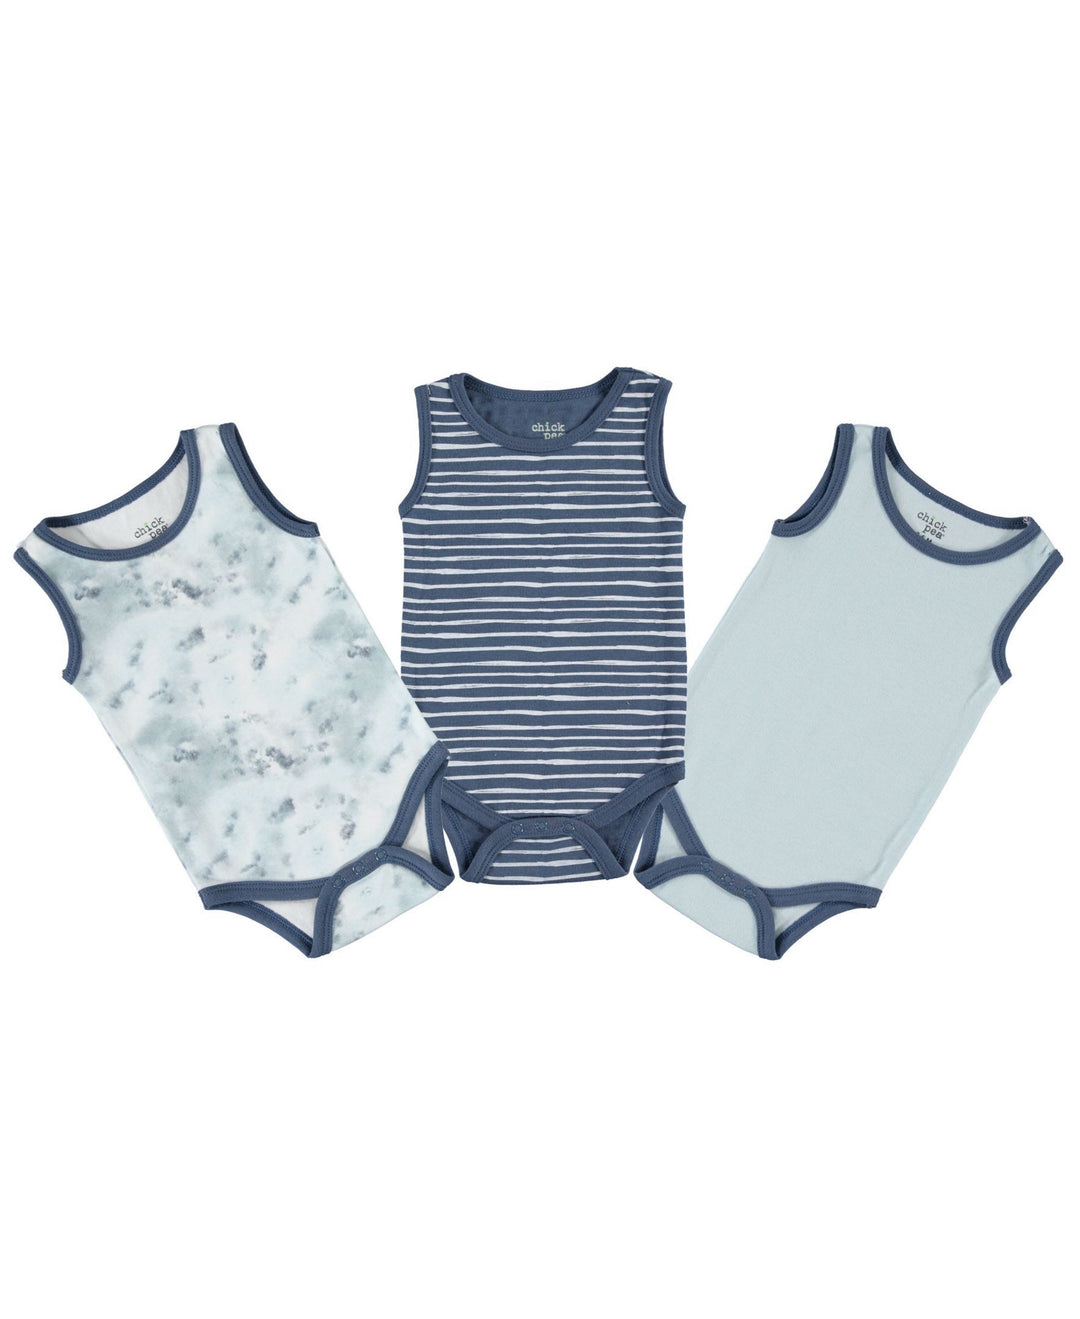 Baby-Boy-Newborn-Essentials-Onesie-Bodysuit-Clothes-Baby-Registry-Shower-Gift-Sleeveless-Image1